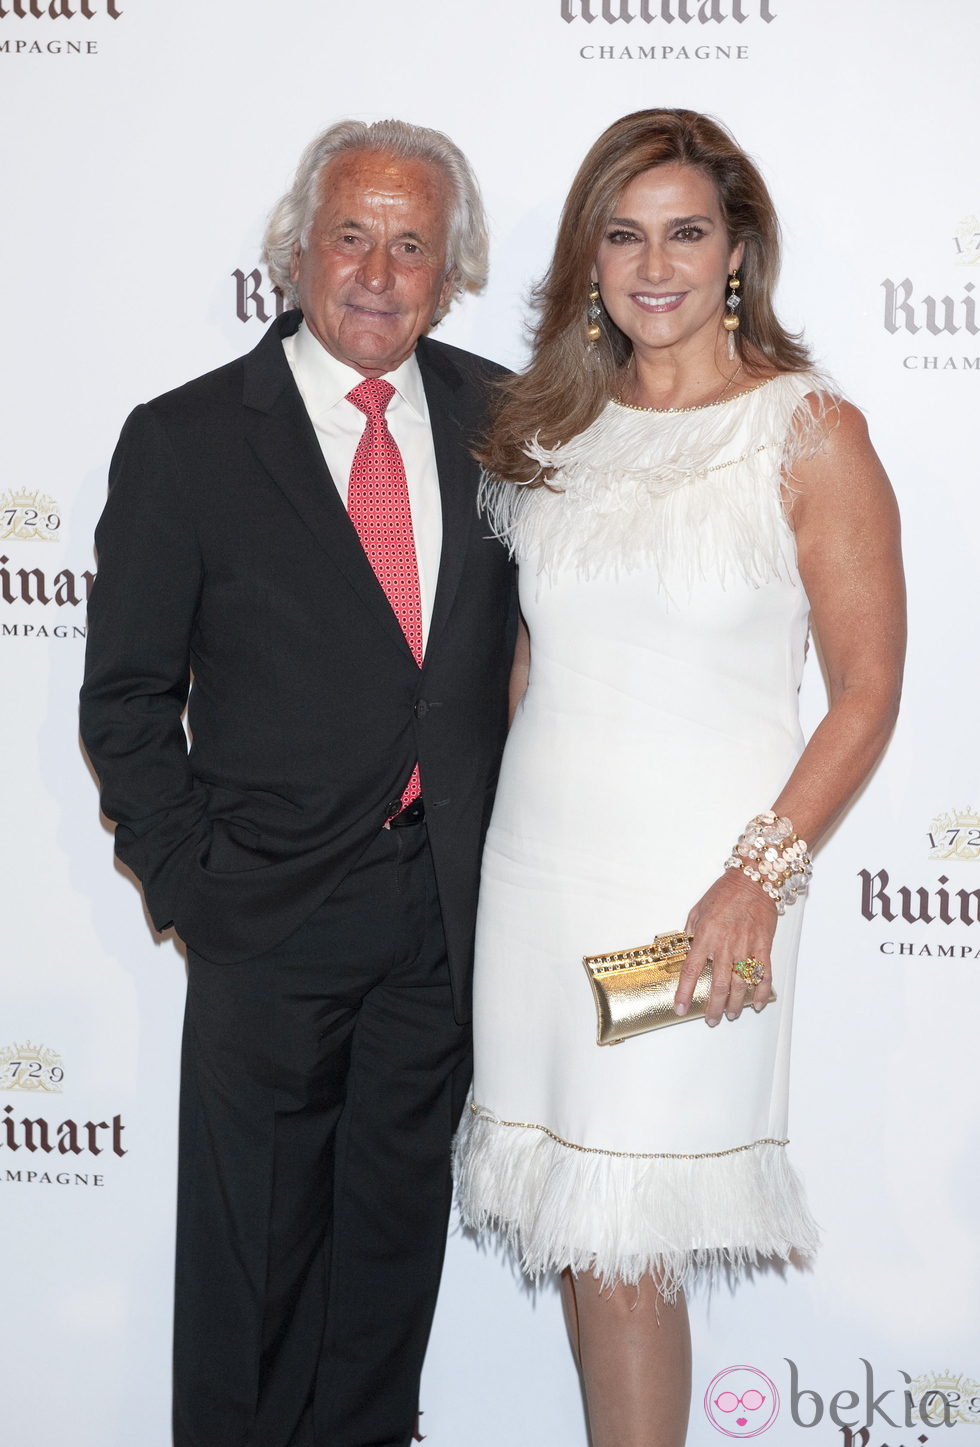 El ex torero Palomo Linares y su mujer Marina Danko